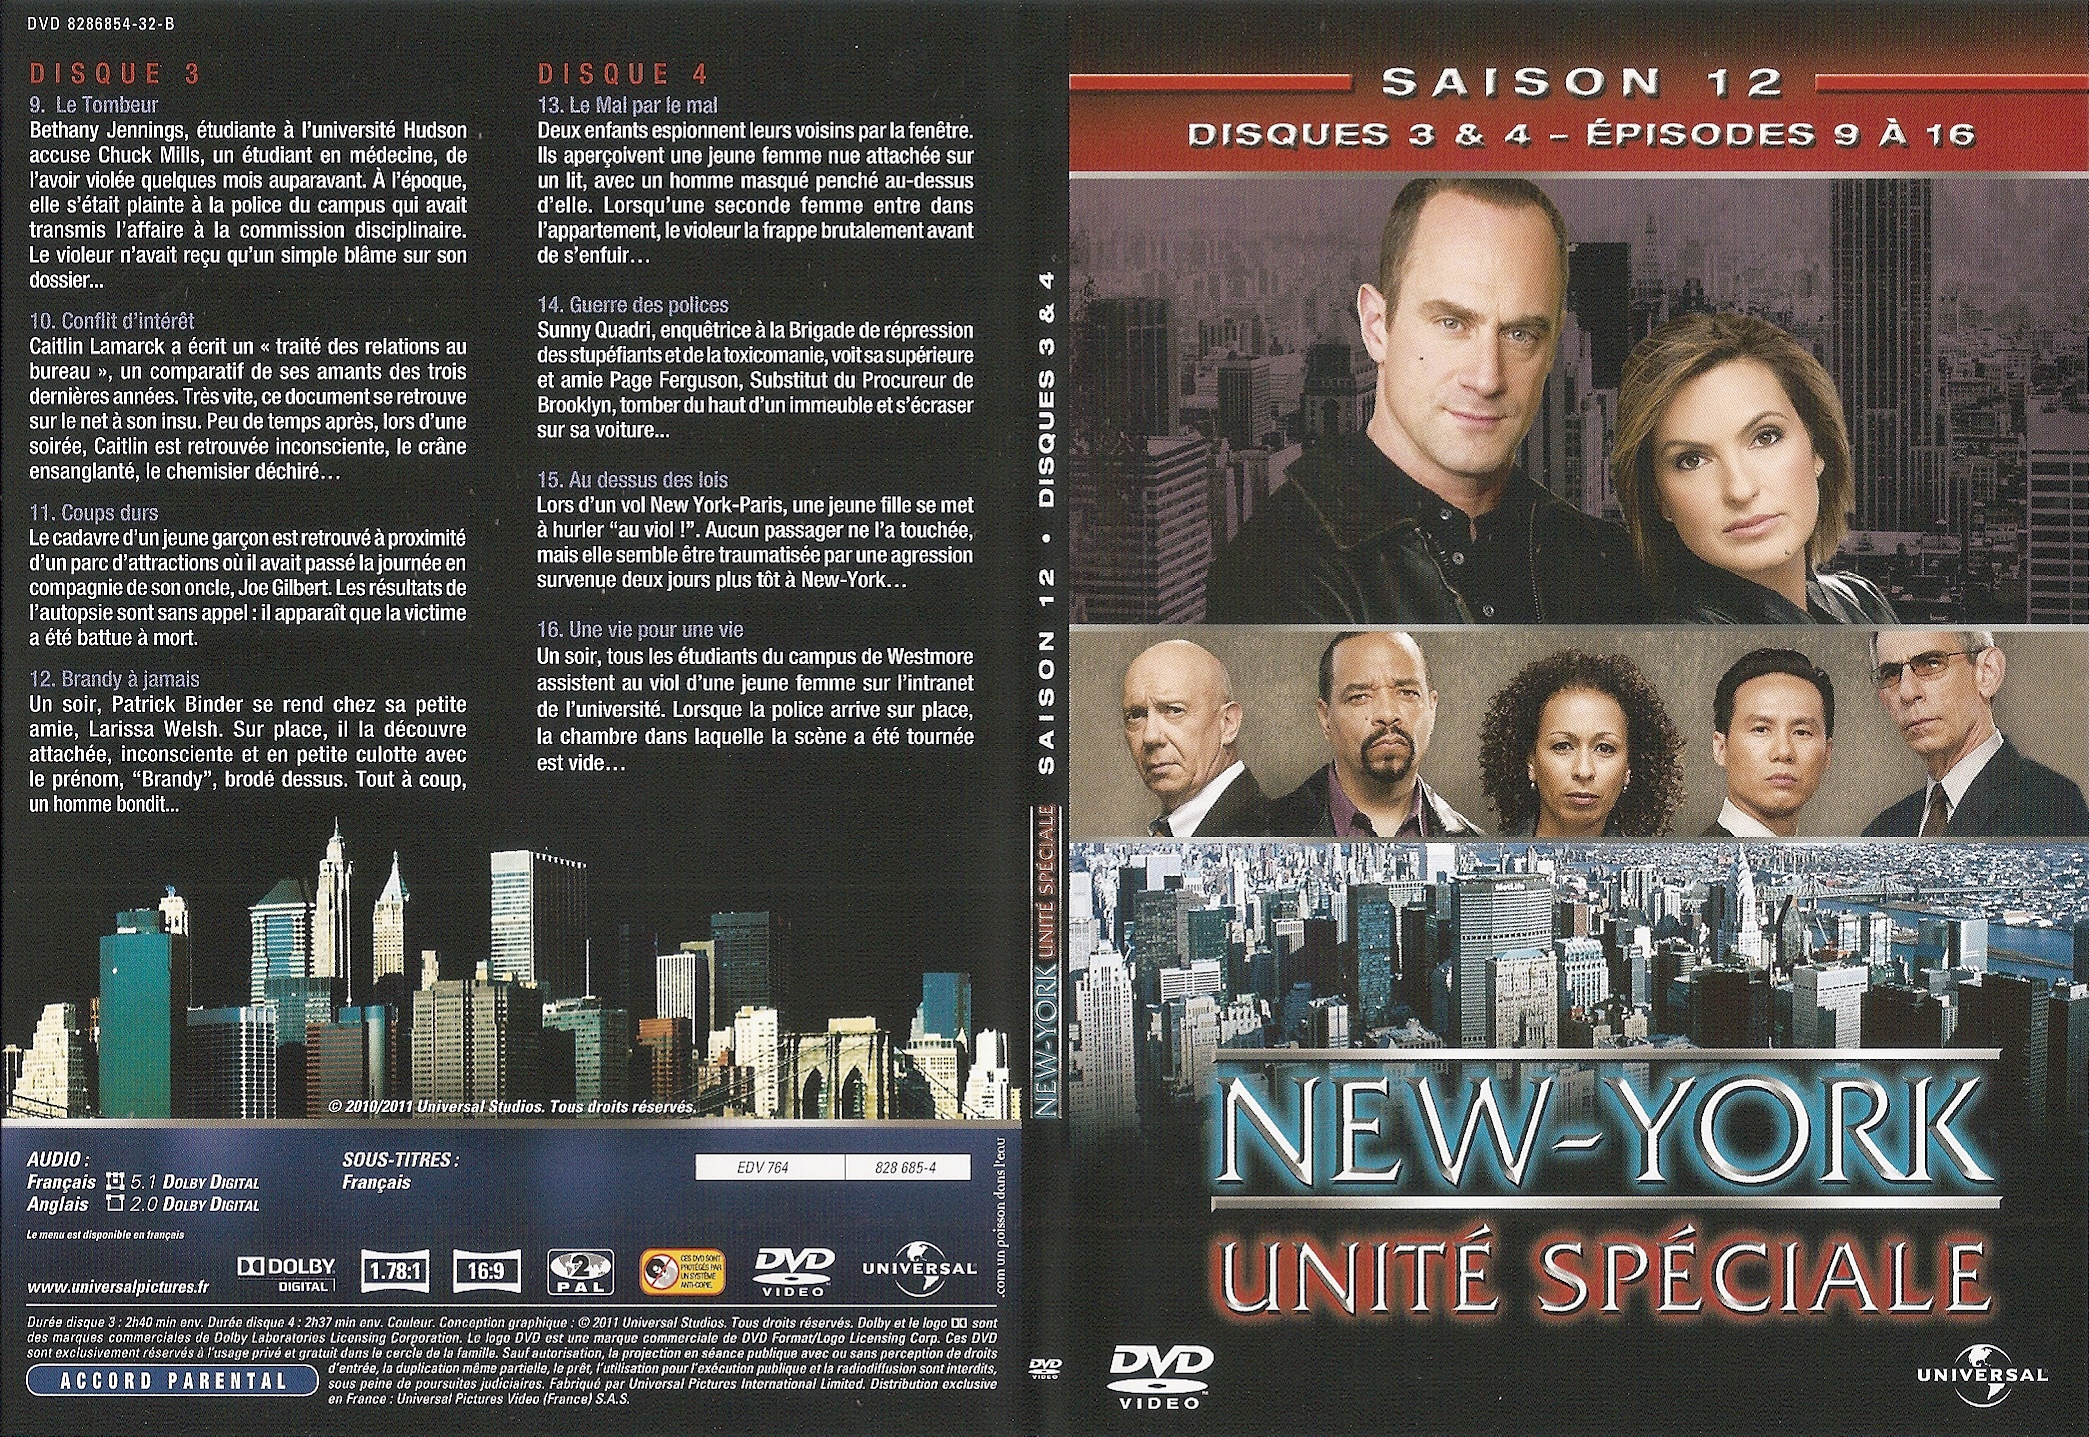 Jaquette DVD New York unit spciale saison 12 DVD 2